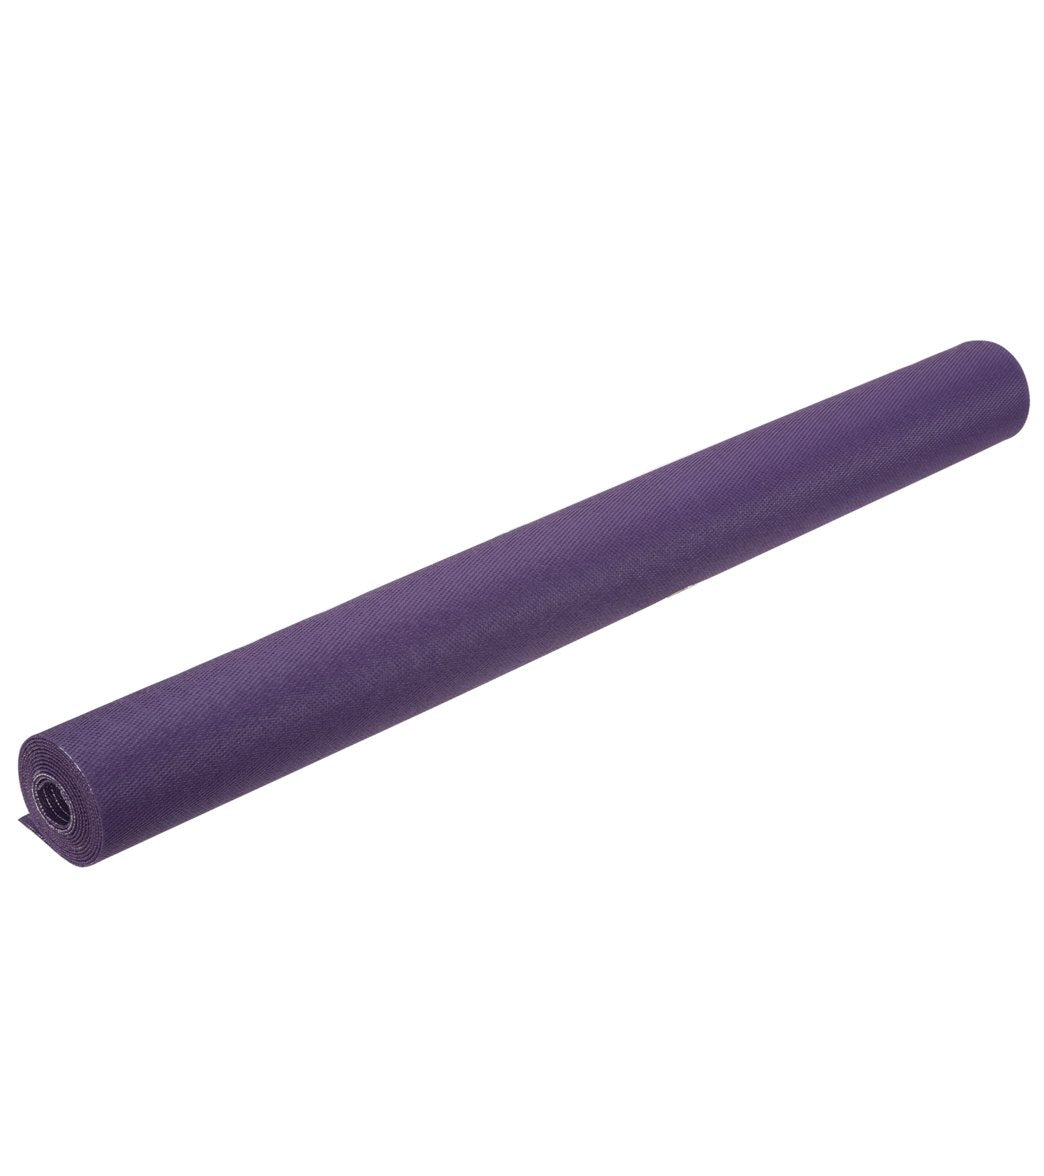 https://www.everydayyoga.com/cdn/shop/products/1740127731747-purple-4a.jpg?v=1615332764